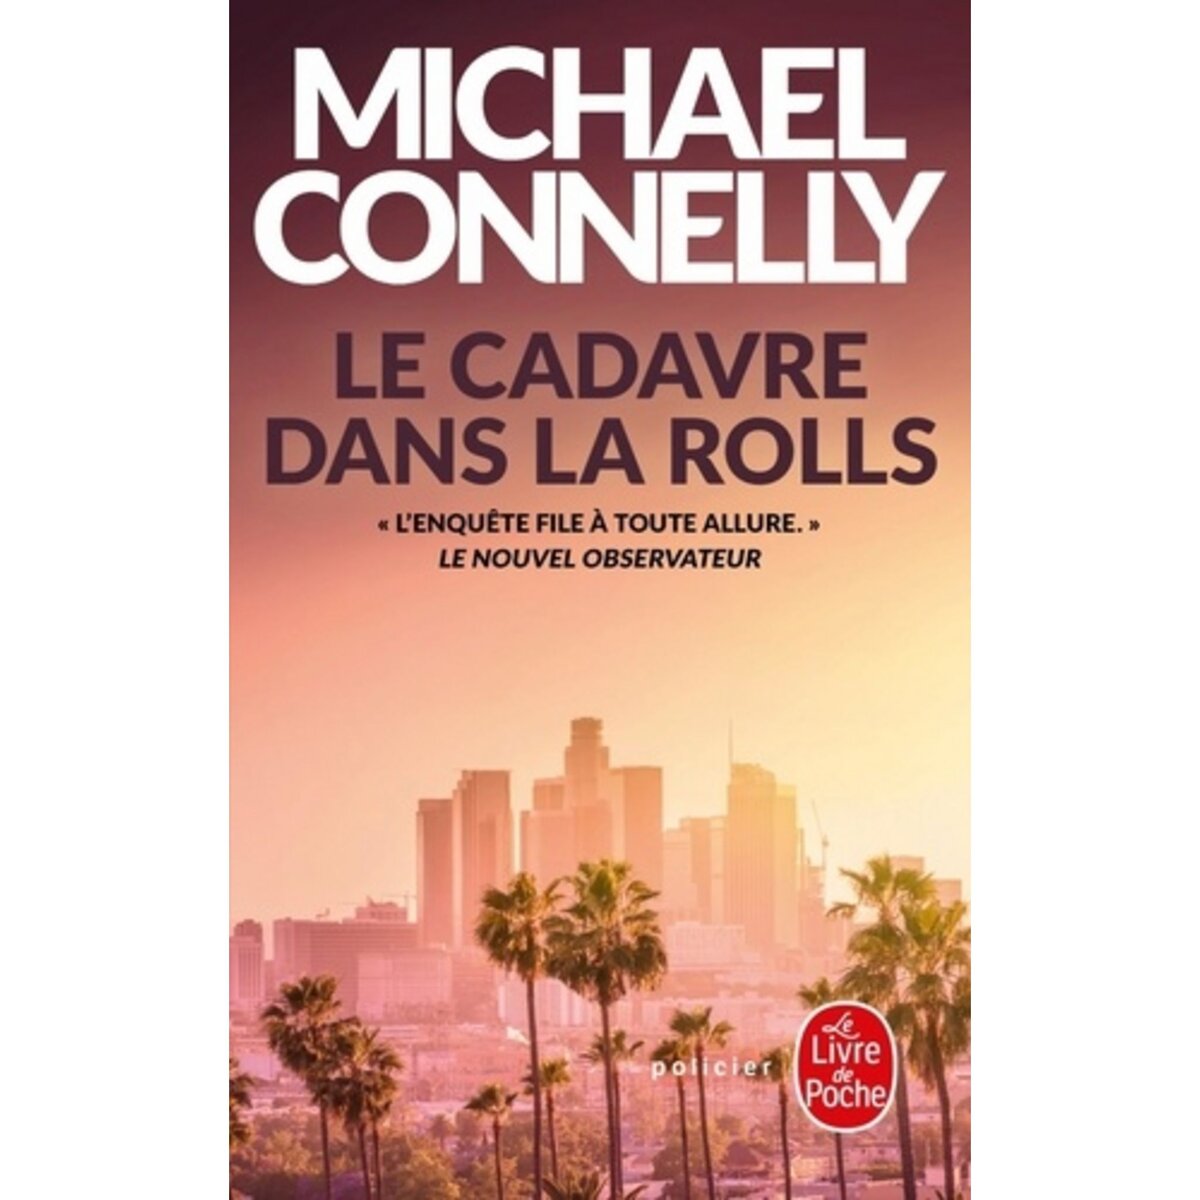  LE CADAVRE DANS LA ROLLS, Connelly Michael